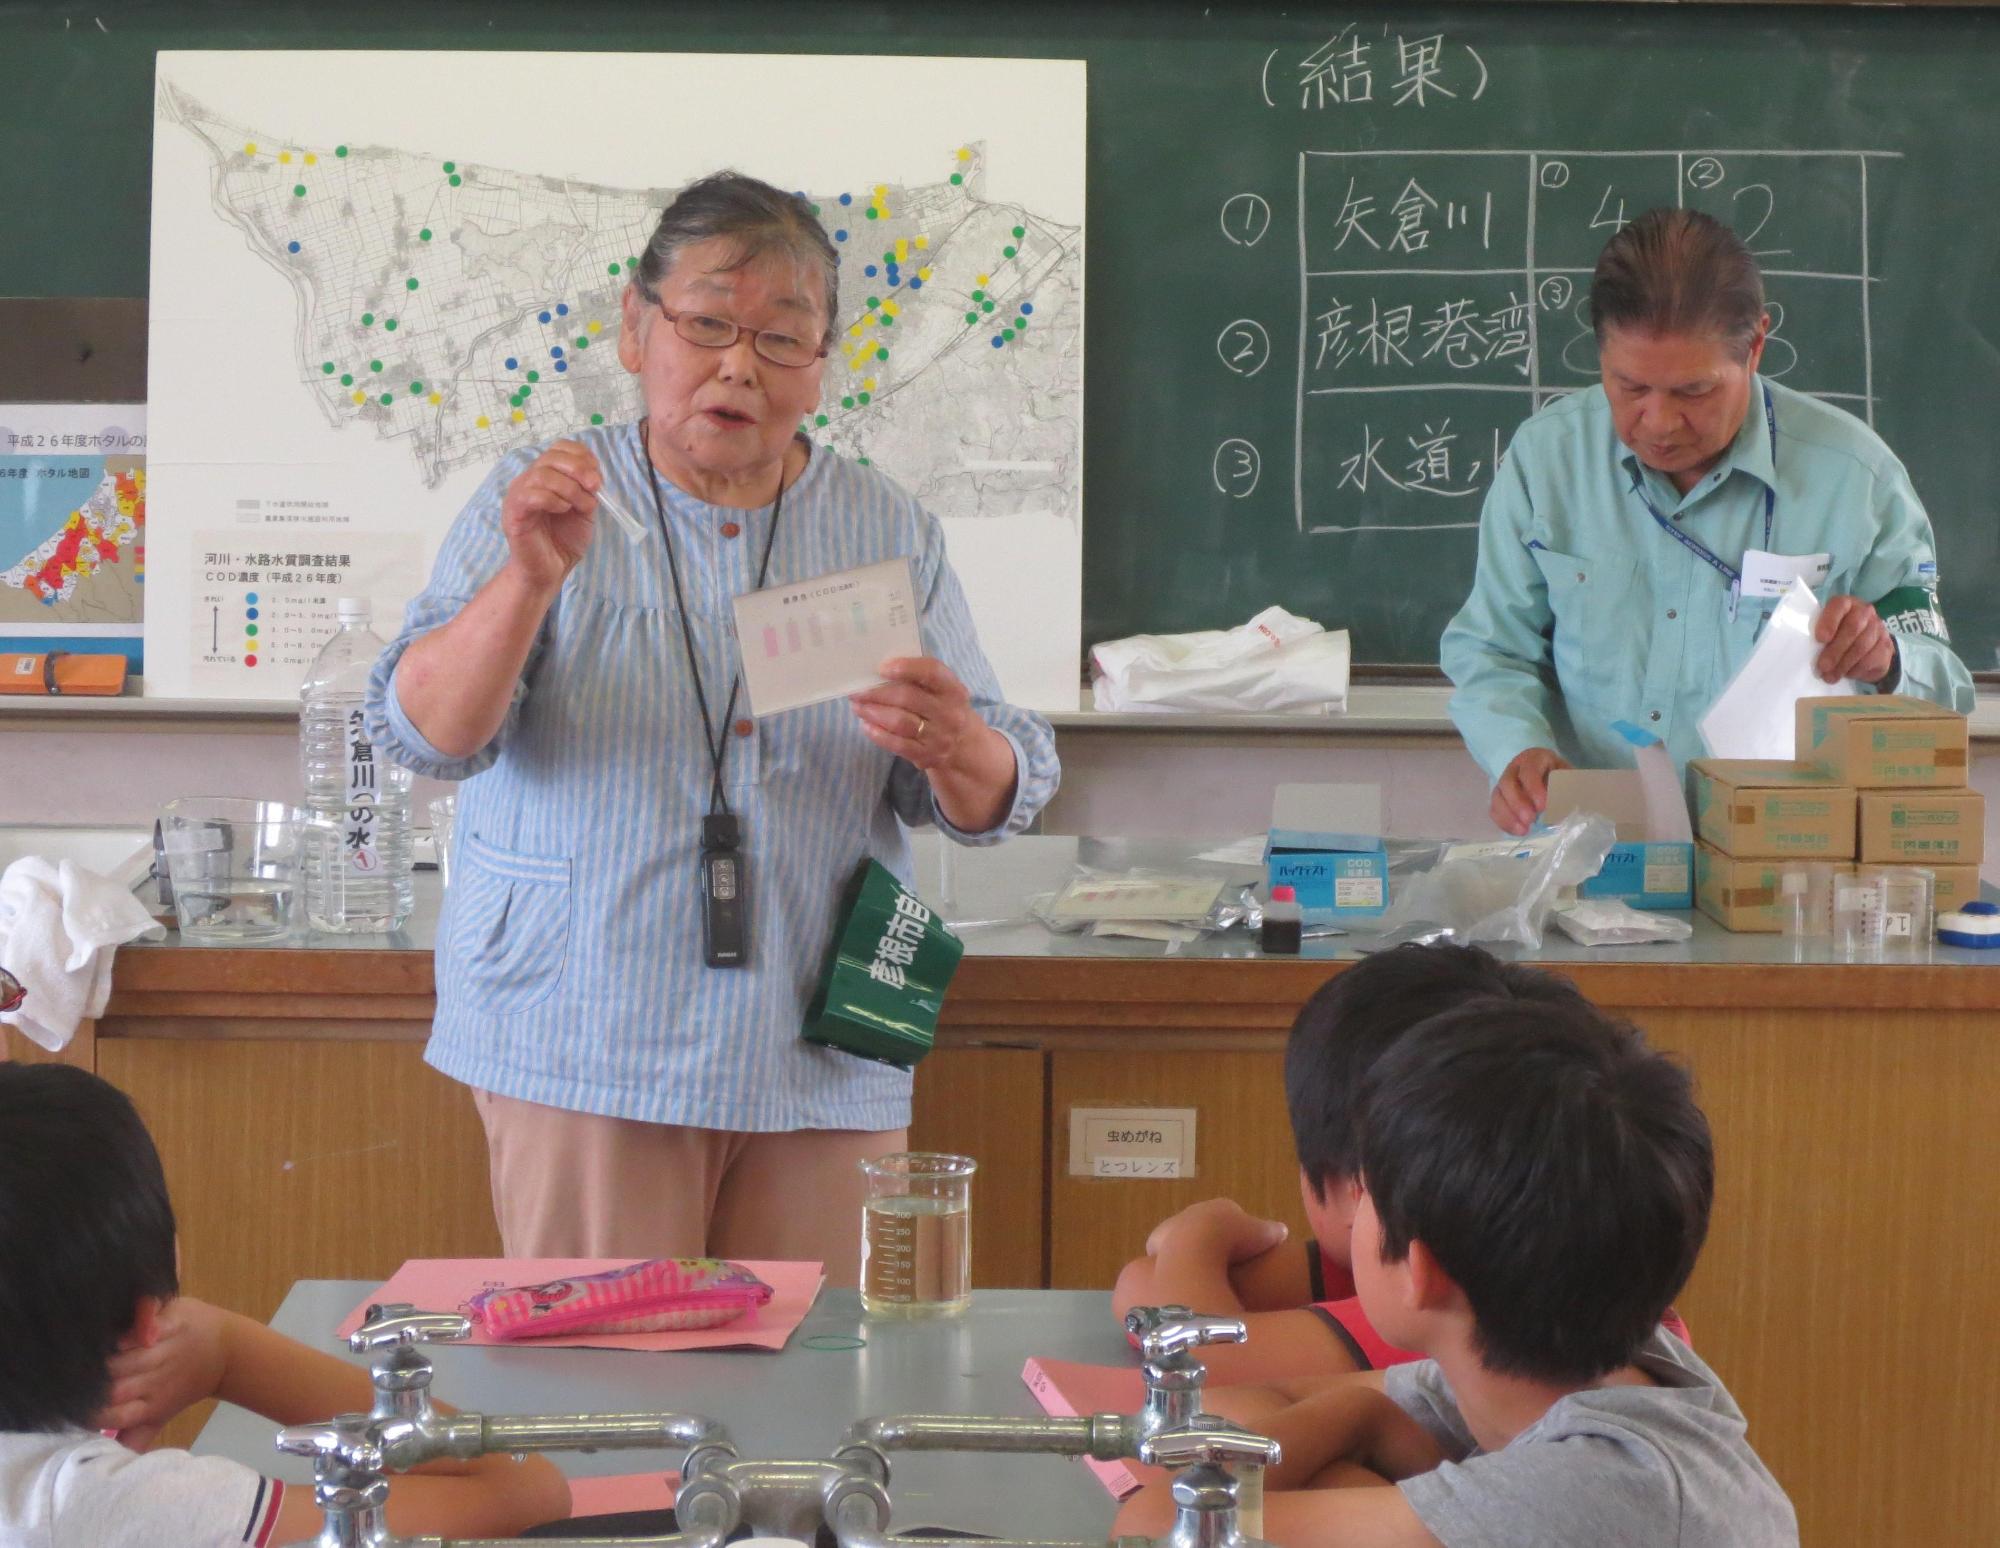 水質分析結果を説明する指導員とそれを聞いている生徒の写真